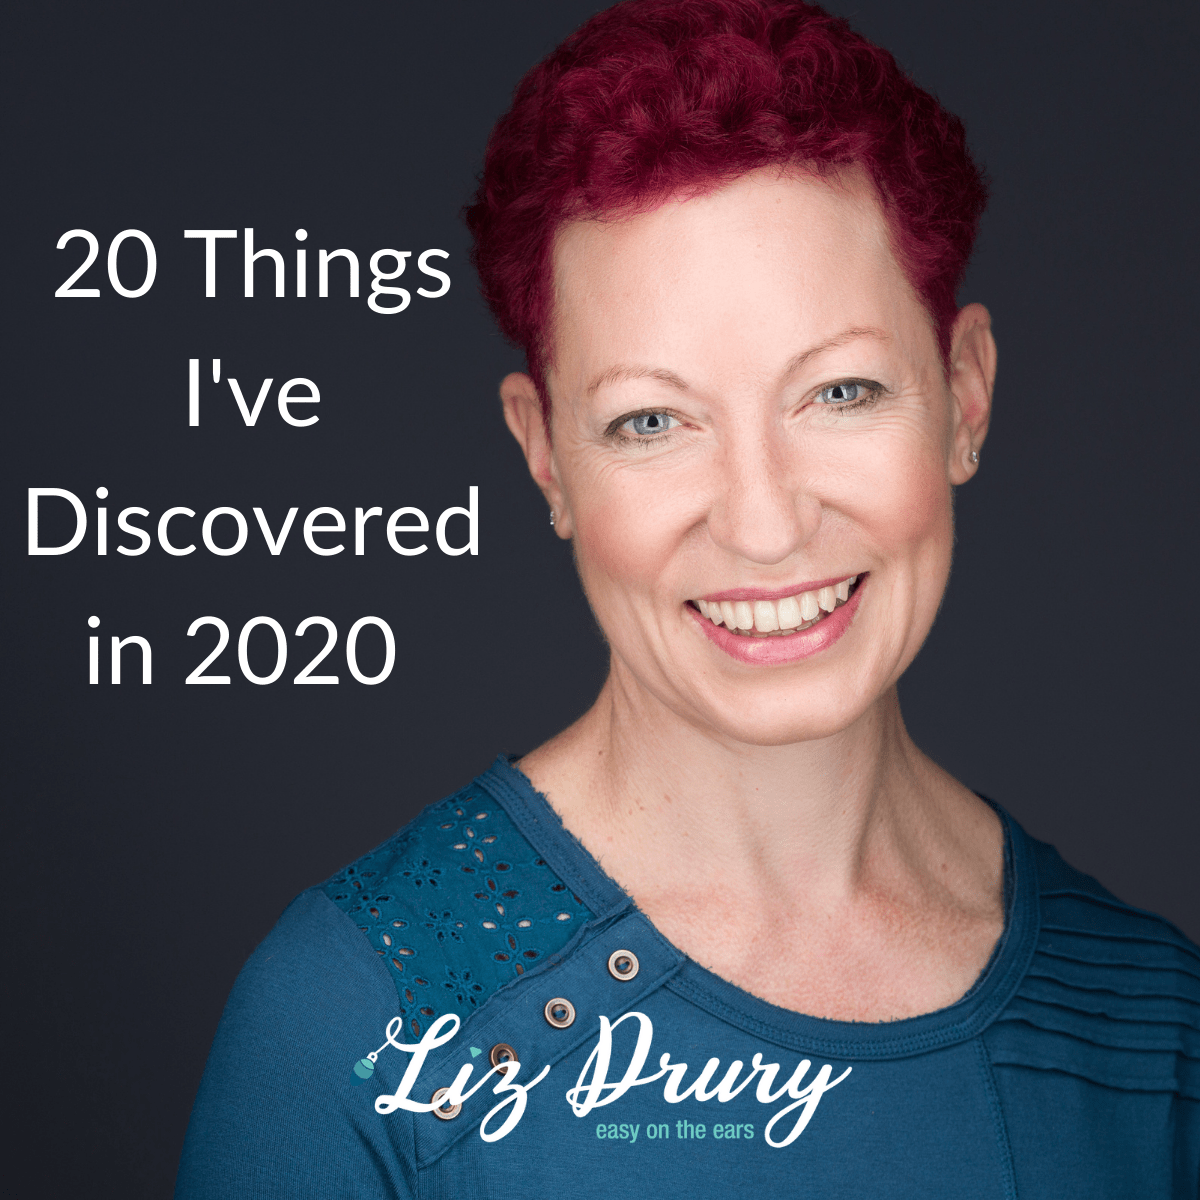 Liz Drury Voice Over Artist